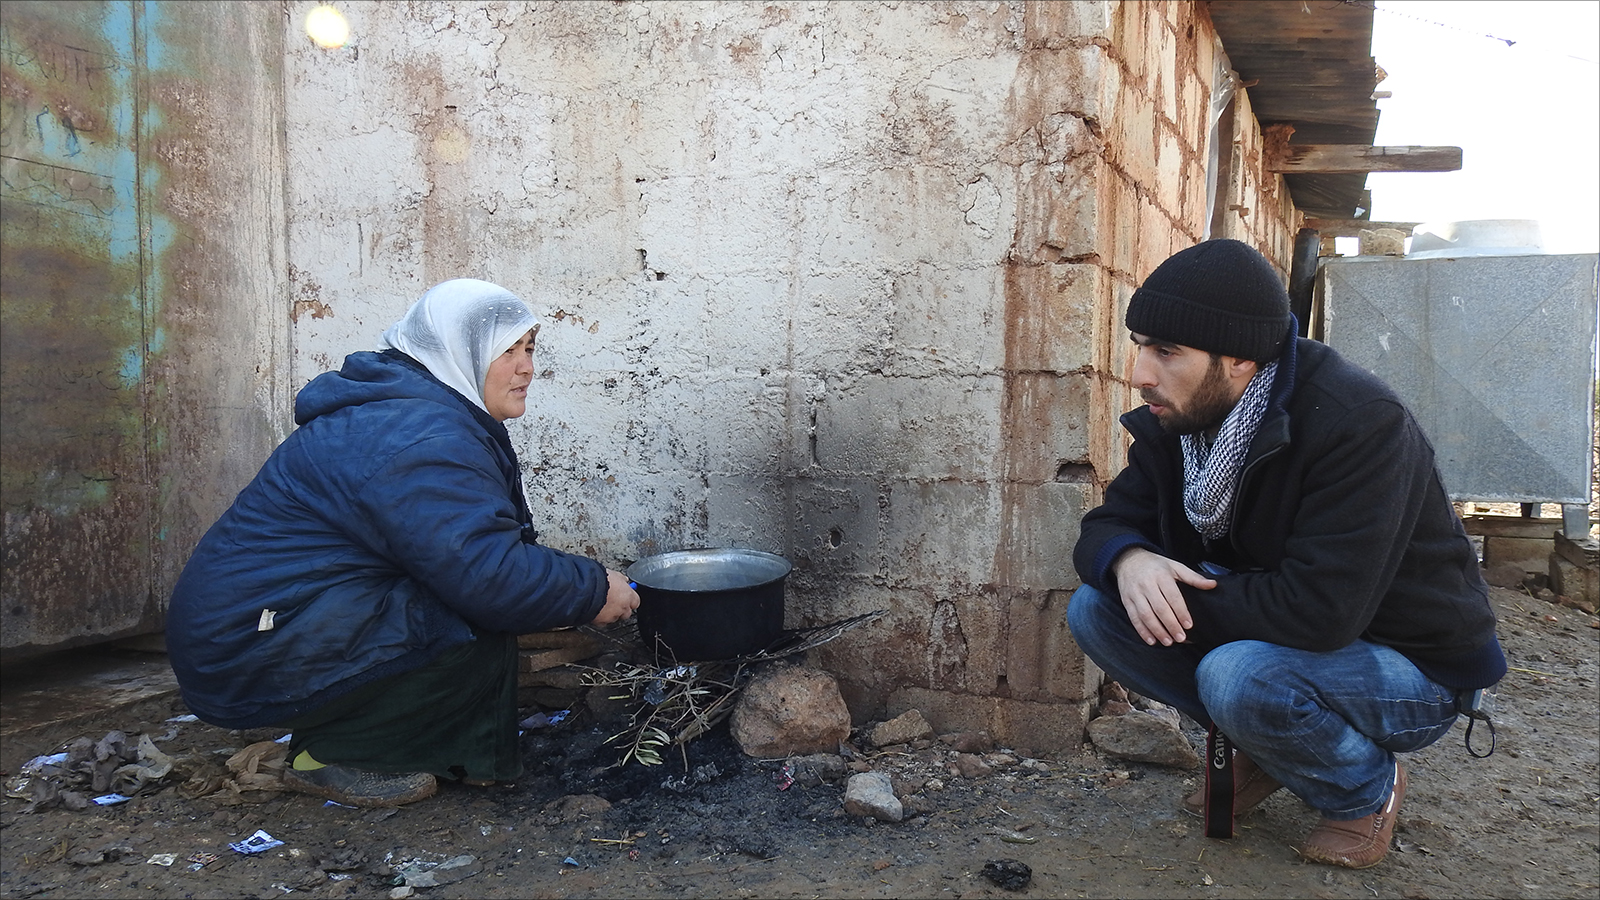 ‪إحدى نساء مخيم الذهبية تطهو الطعام بطريقة بدائية‬ إحدى نساء مخيم الذهبية تطهو الطعام بطريقة بدائية (الجزيرة نت)